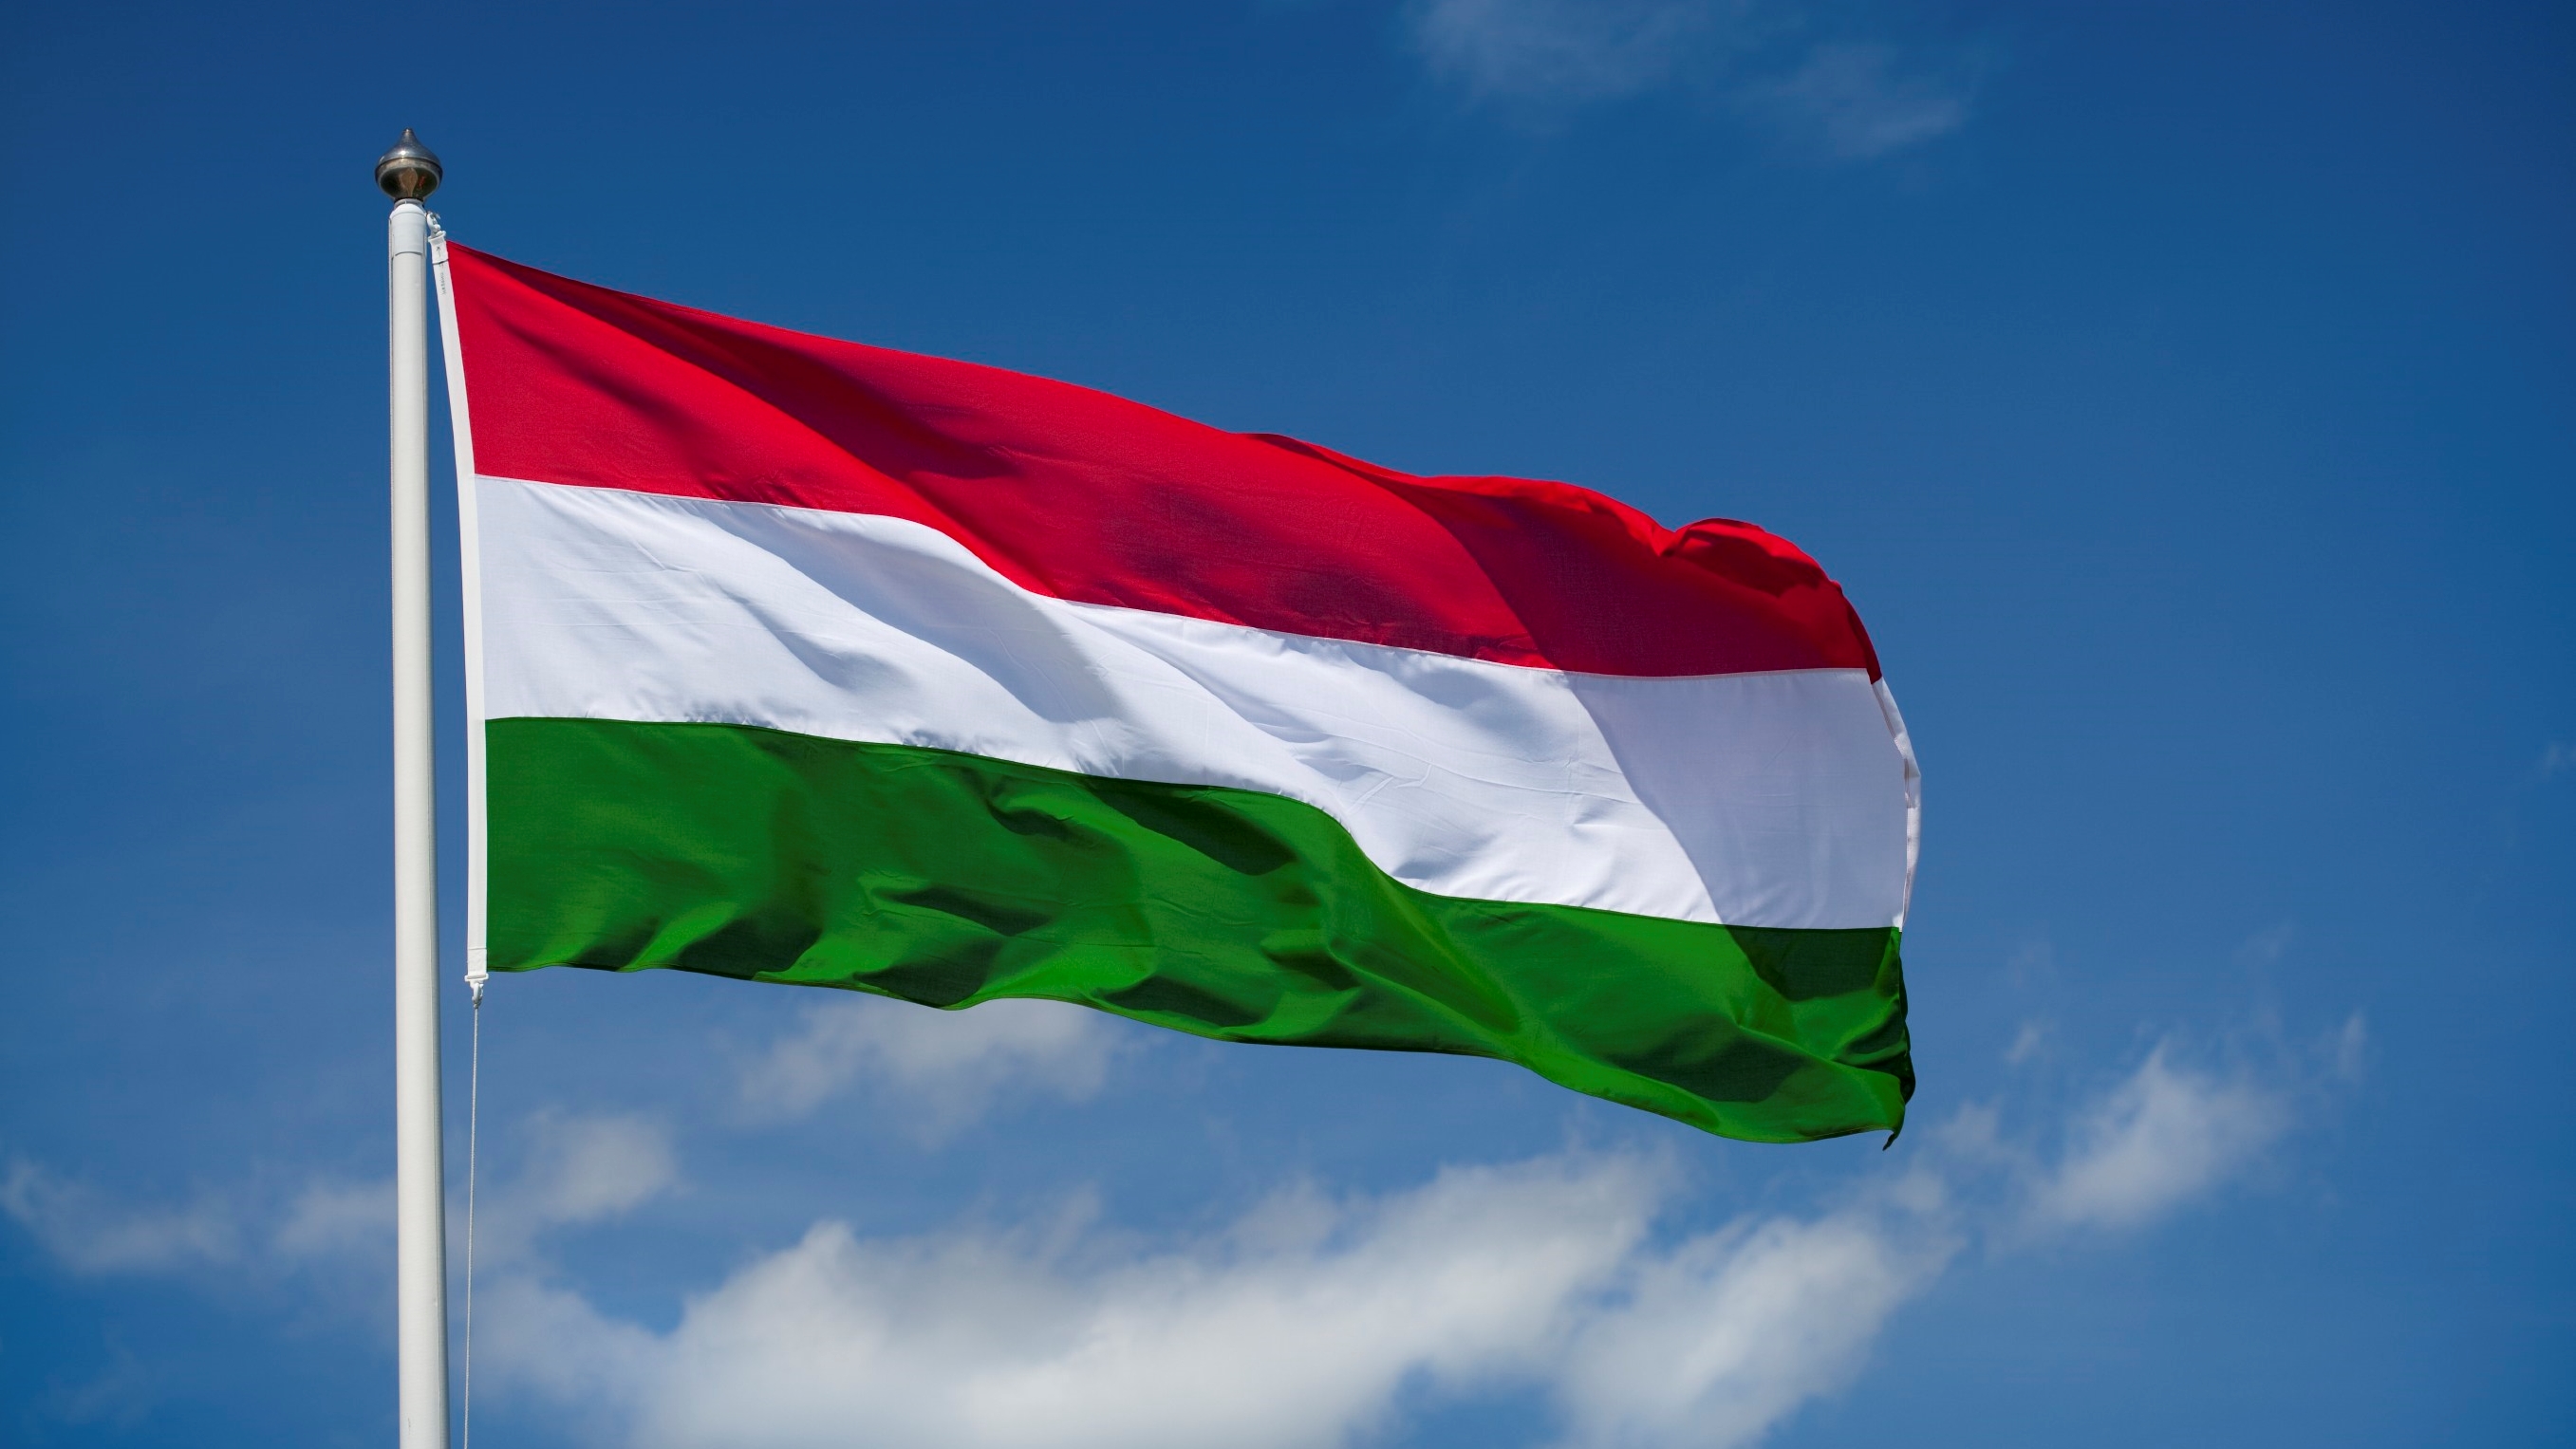 Macaristan'da Uygulanacak Yol Yasakları